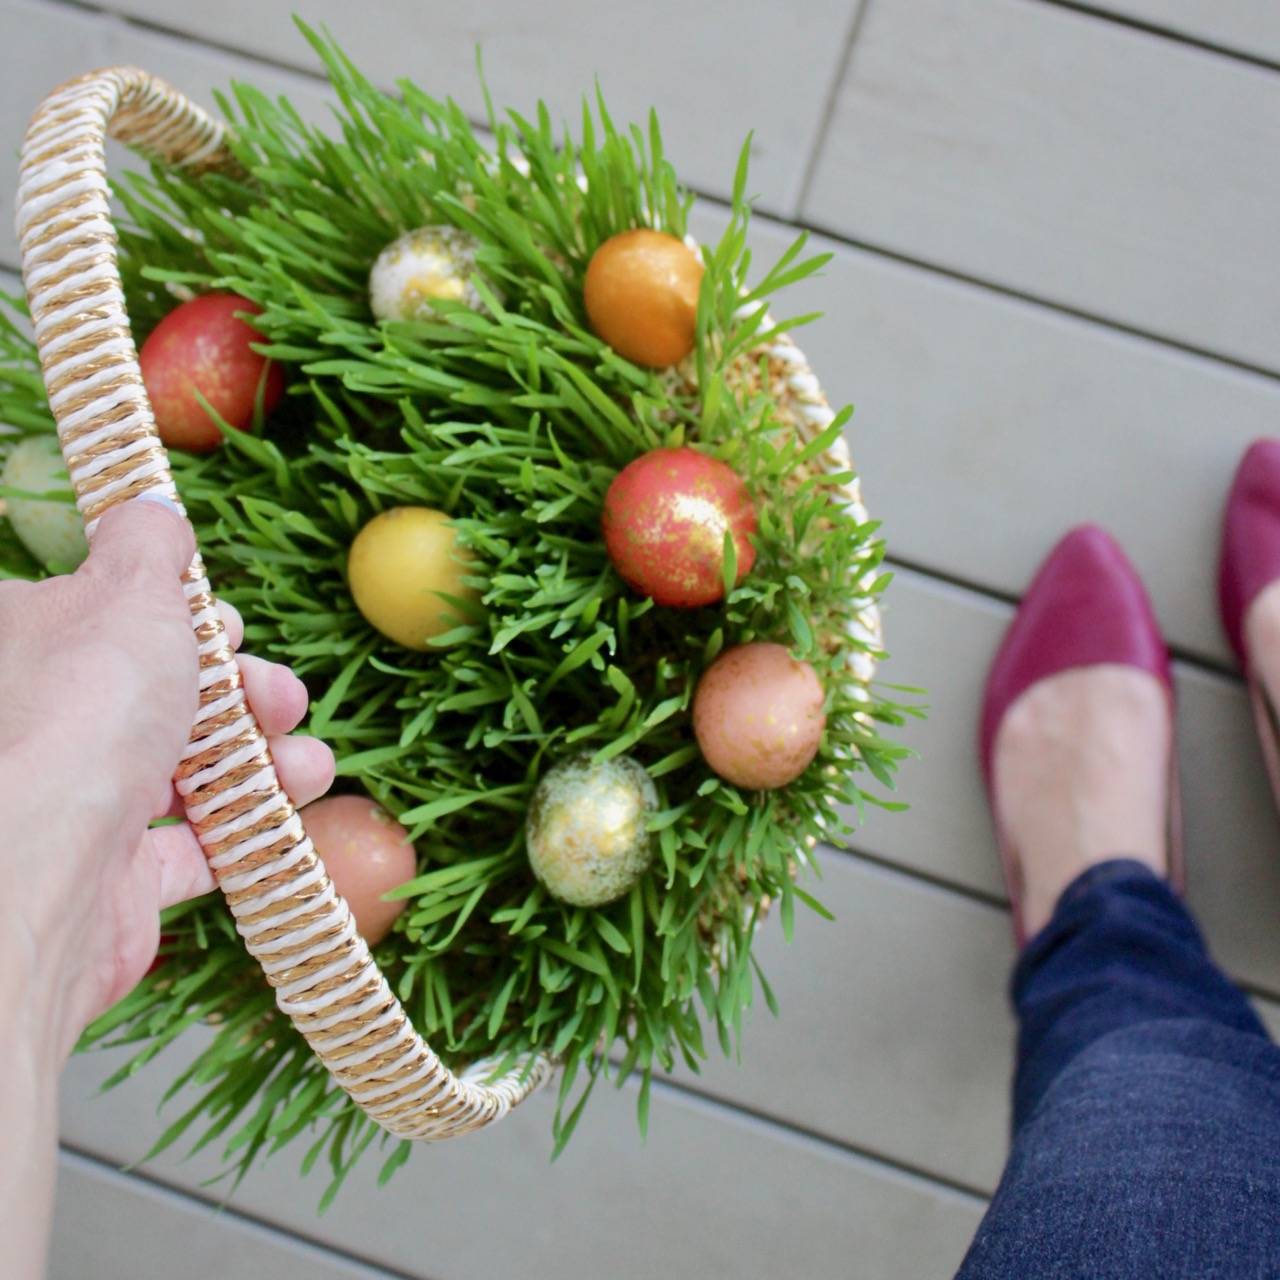 Easter Basket Grass – Botanical Interests